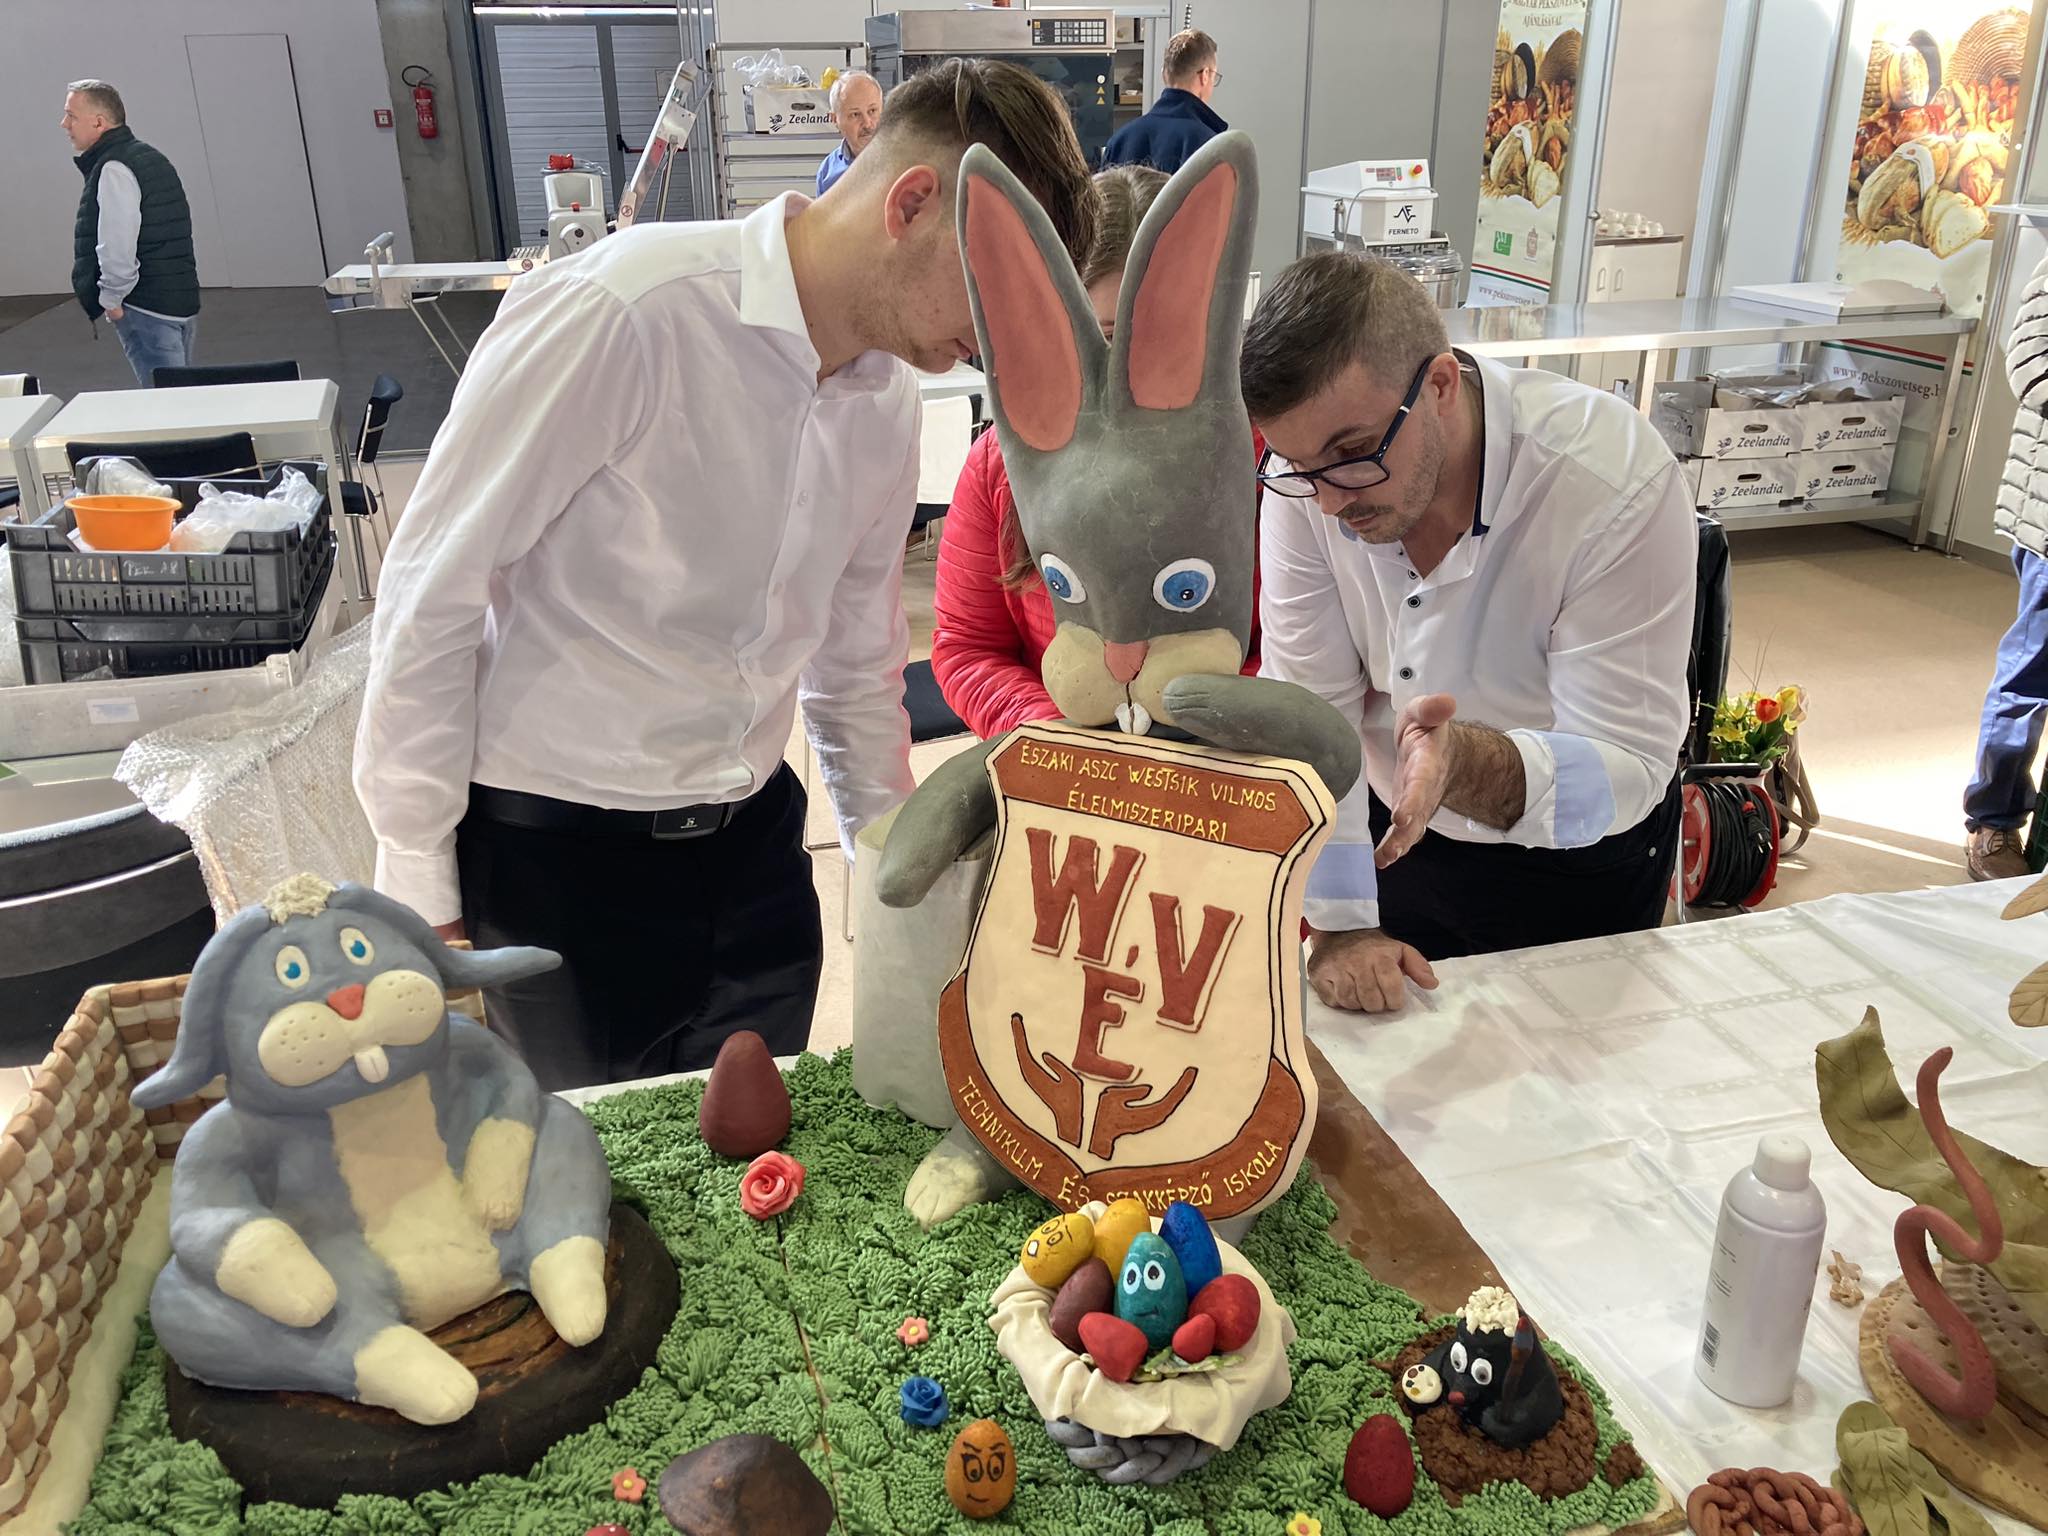 Három ember egy bonyolult tortakiállítást vizsgál egy rendezvényteremben. A tortán egy nagy nyúl látható, aki egy címert tart a "W.E.Y" kezdőbetűkkel. és kisebb fondant állatok füves alapon. A jelenet egy sütőversenyt vagy kirakat beállítást jelez.